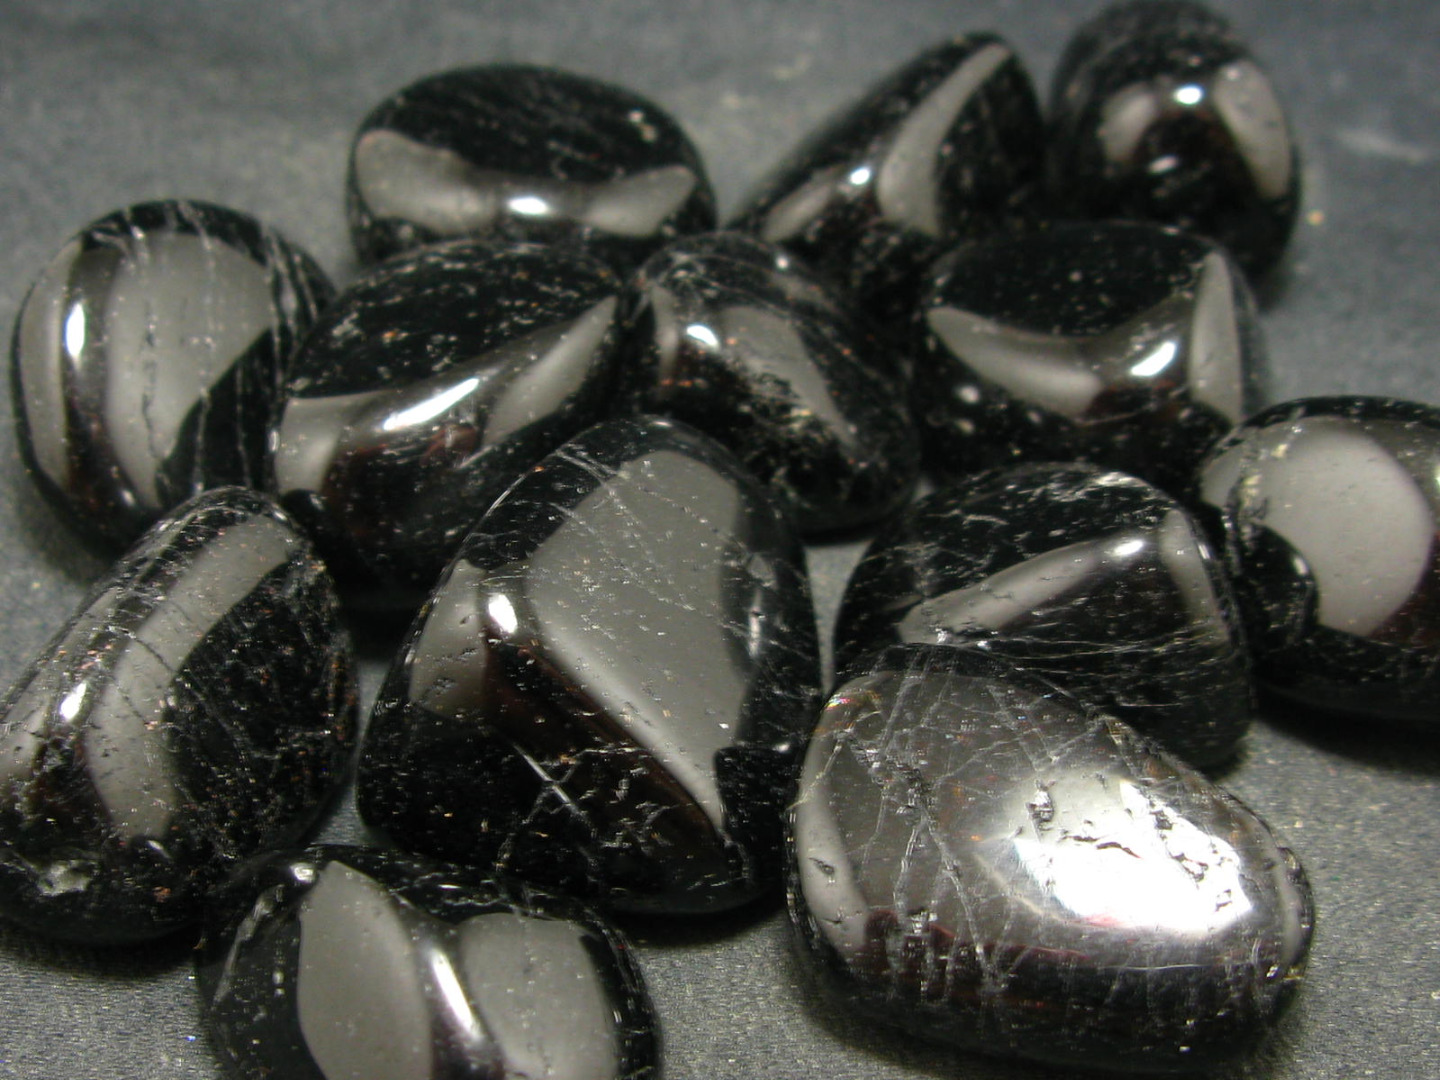 đá sapphire đen cho người sinh năm 2005